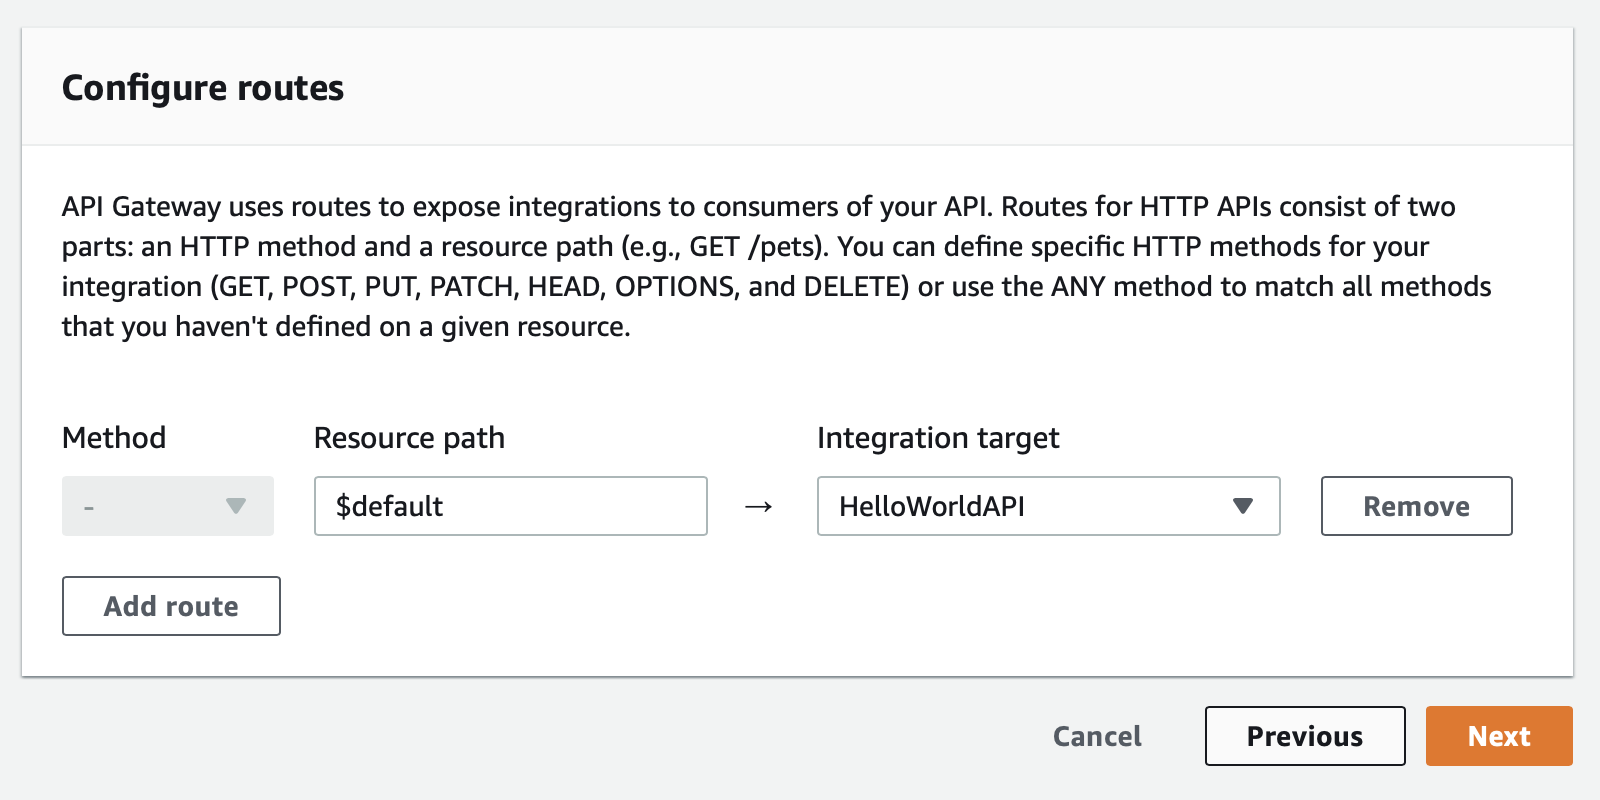 Configure routes for API Gateway